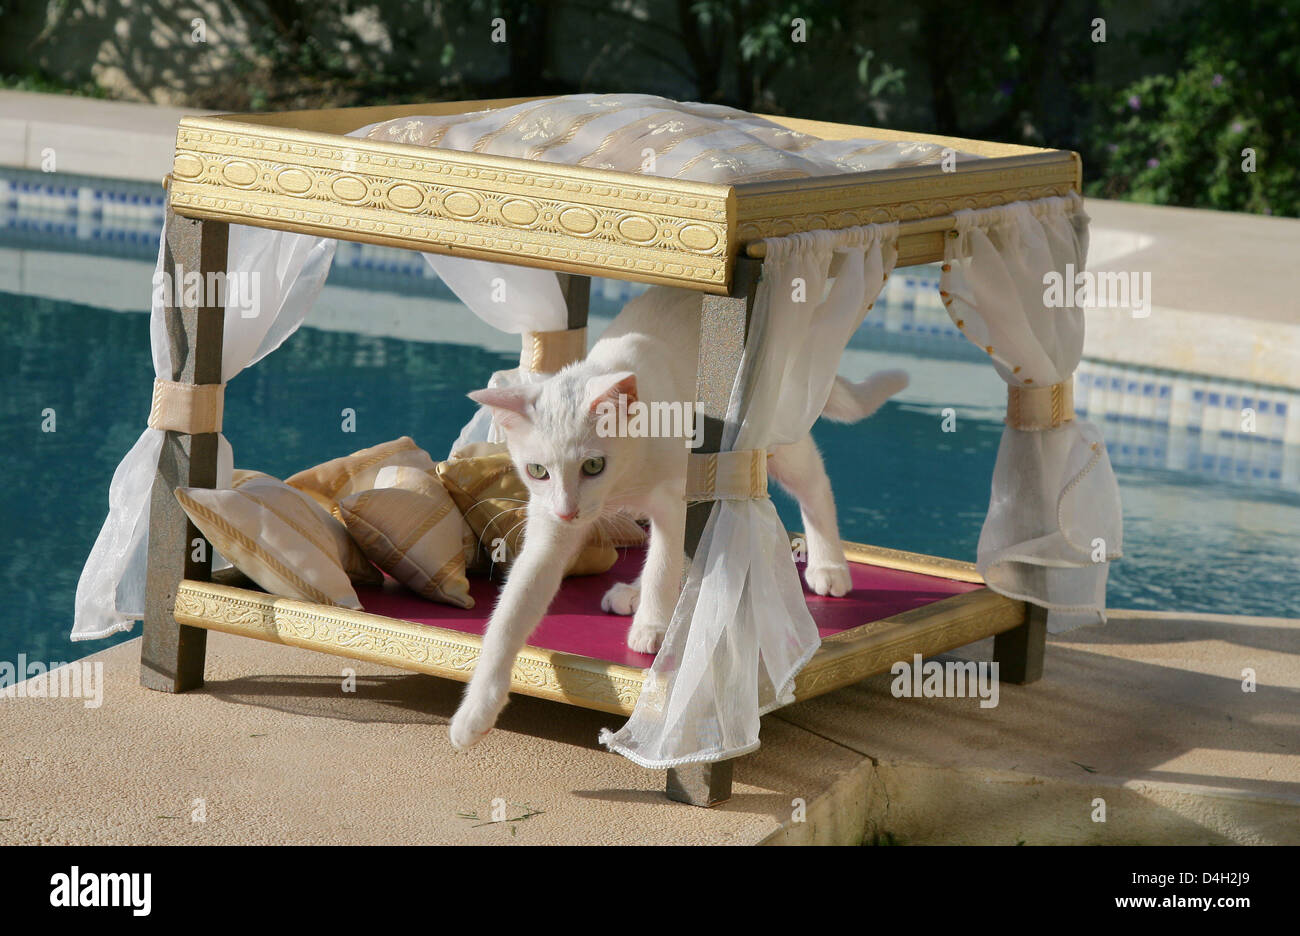 Katze "Mutzel" sitzt in einem Hund-Diwan, entworfen von Maja Synke  Prinzessin von Hohenzollern in einem Garten in Marbella, Spanien, 26. Juli  2008. Maja von Hohenzollern lebt in einem Haus in Andalusien mit